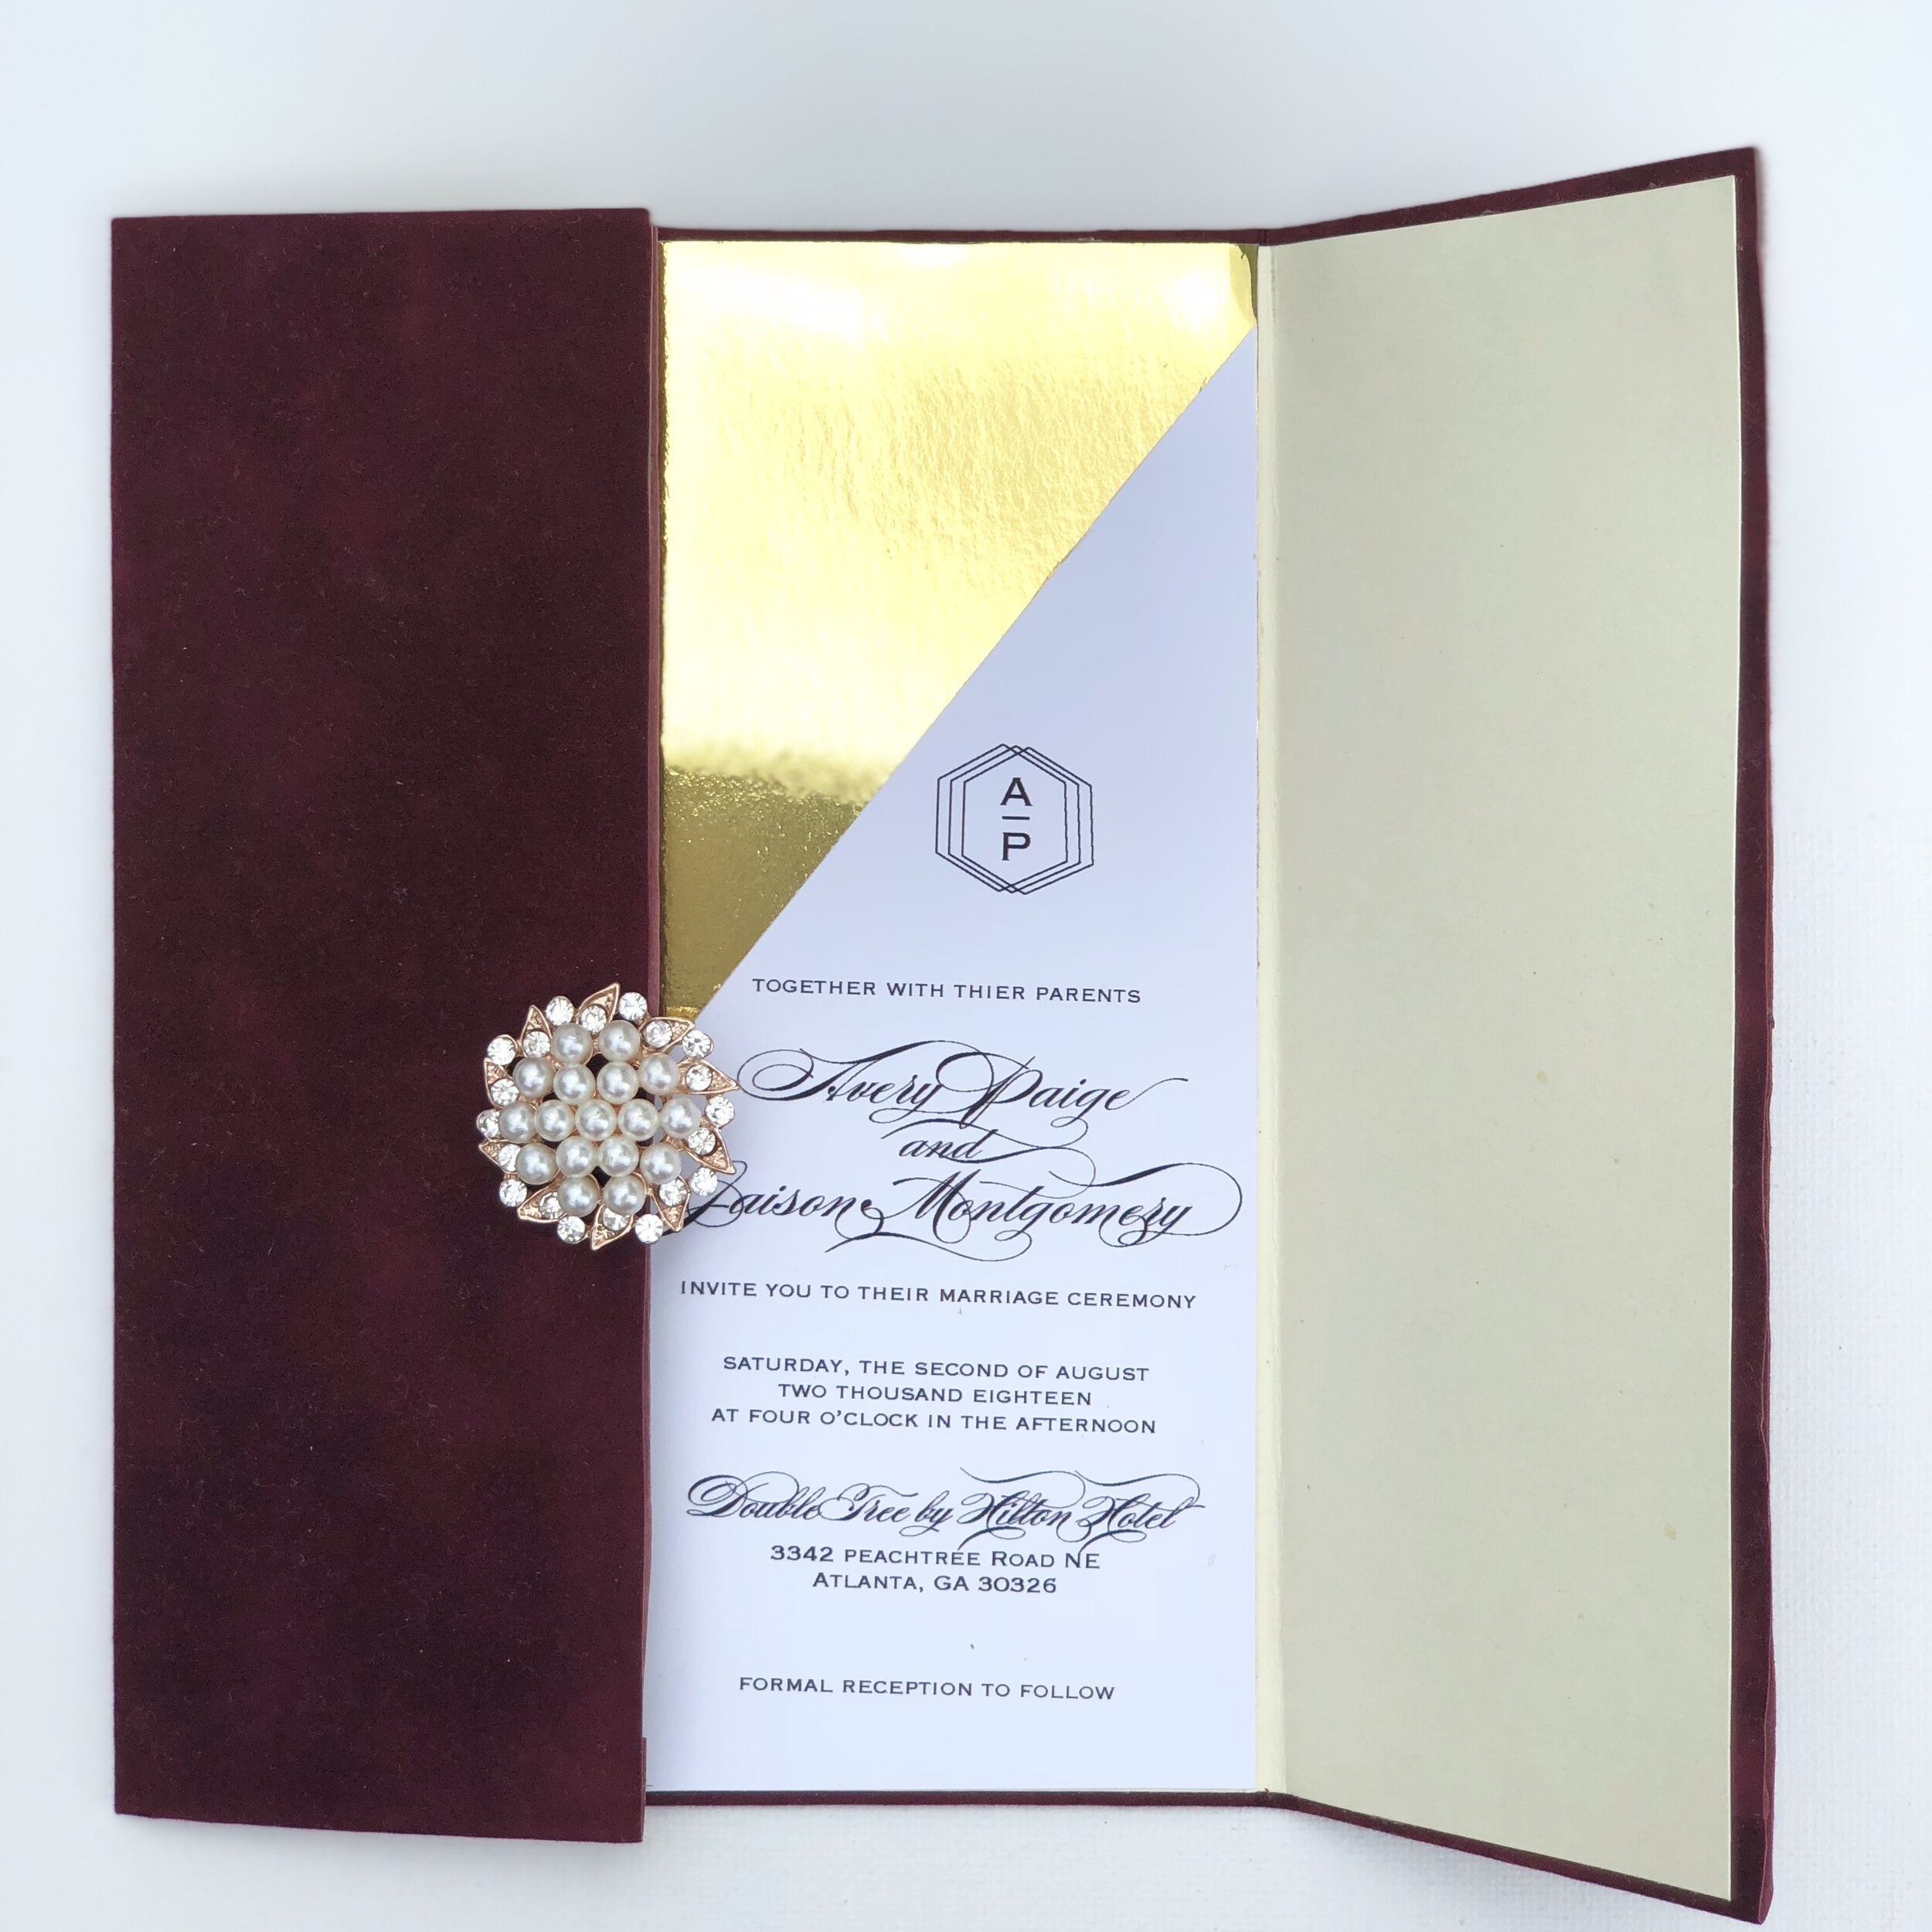 Pittsburgh-wedding-invitation-velvet